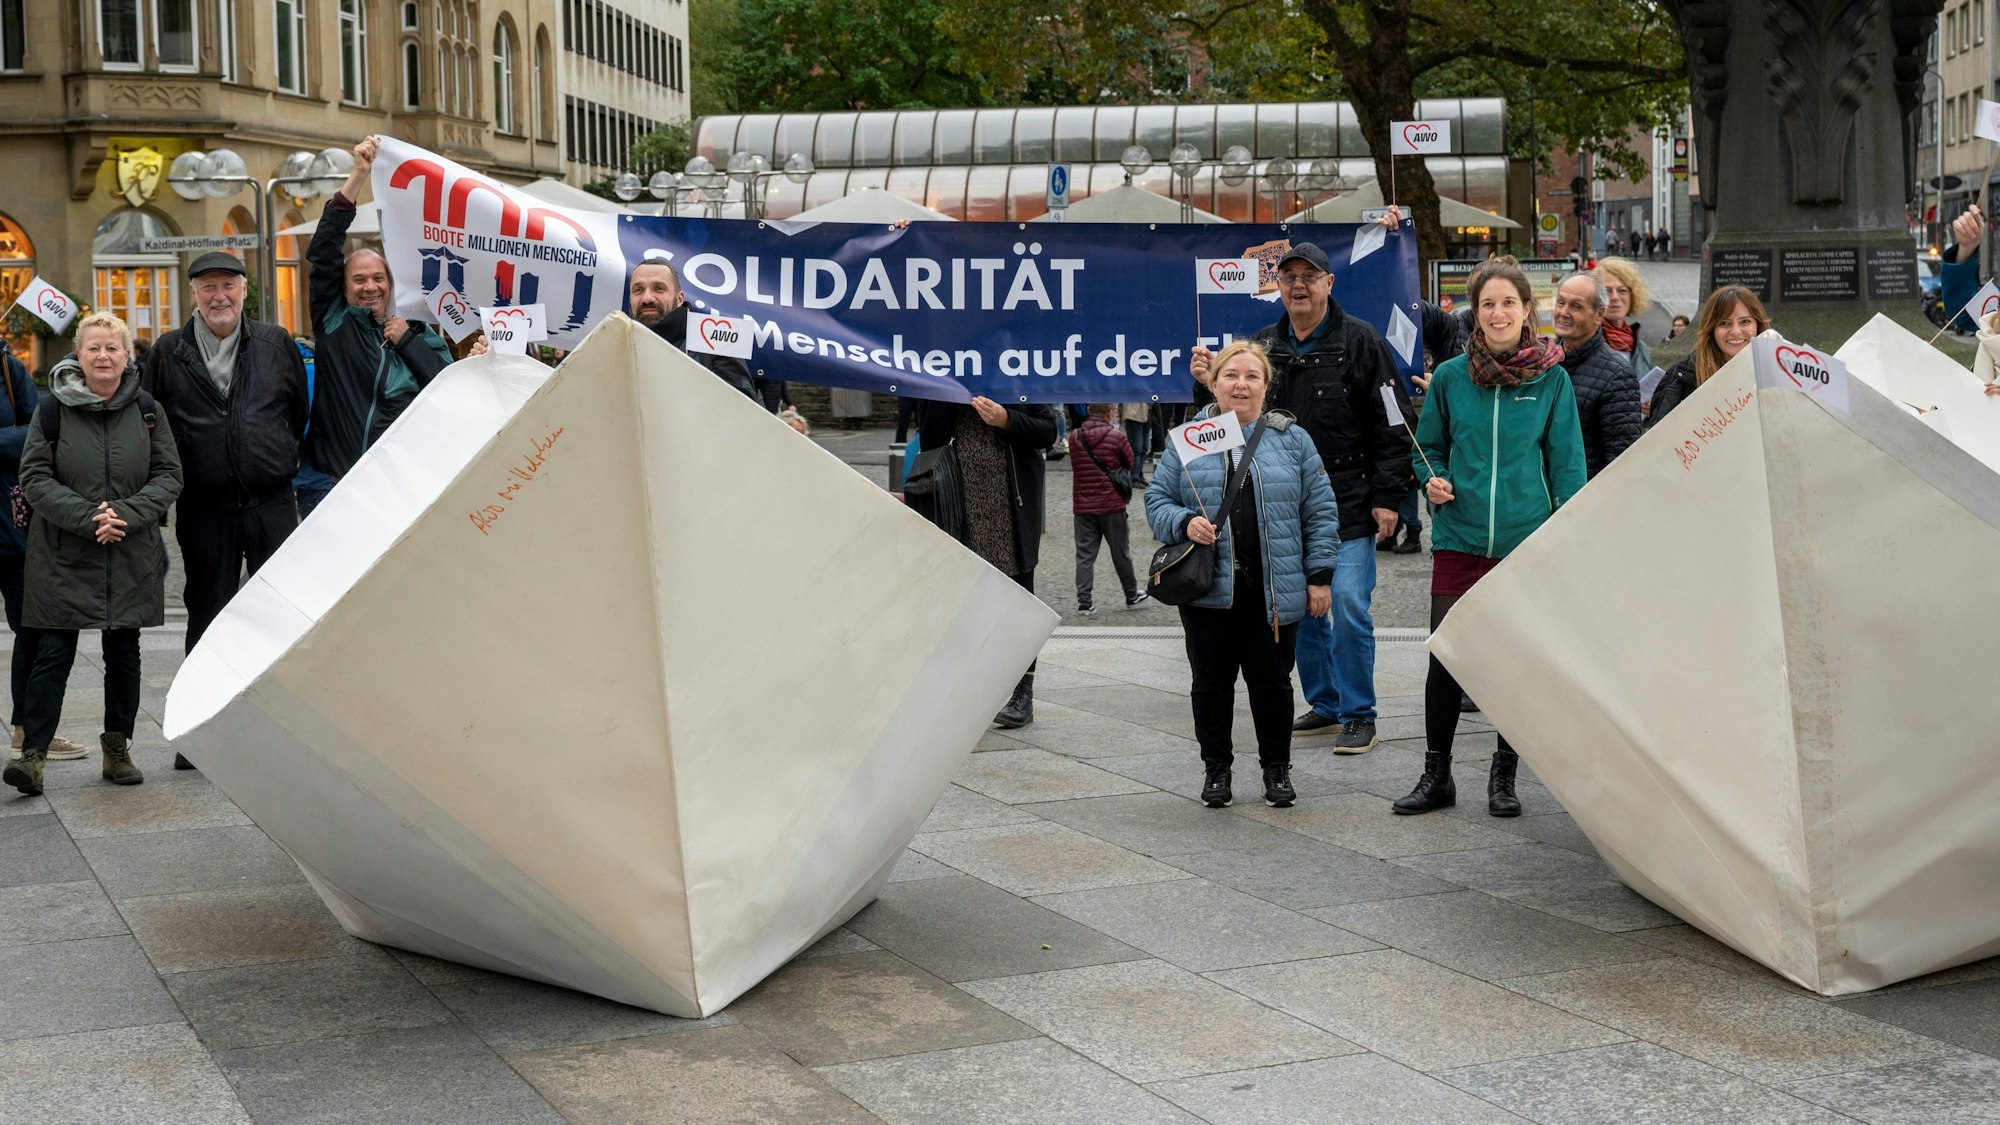 Überdimensionale Papierboote wurden vor dem Dom als Mahnmal für Menschen auf der Flucht ausgestellt.